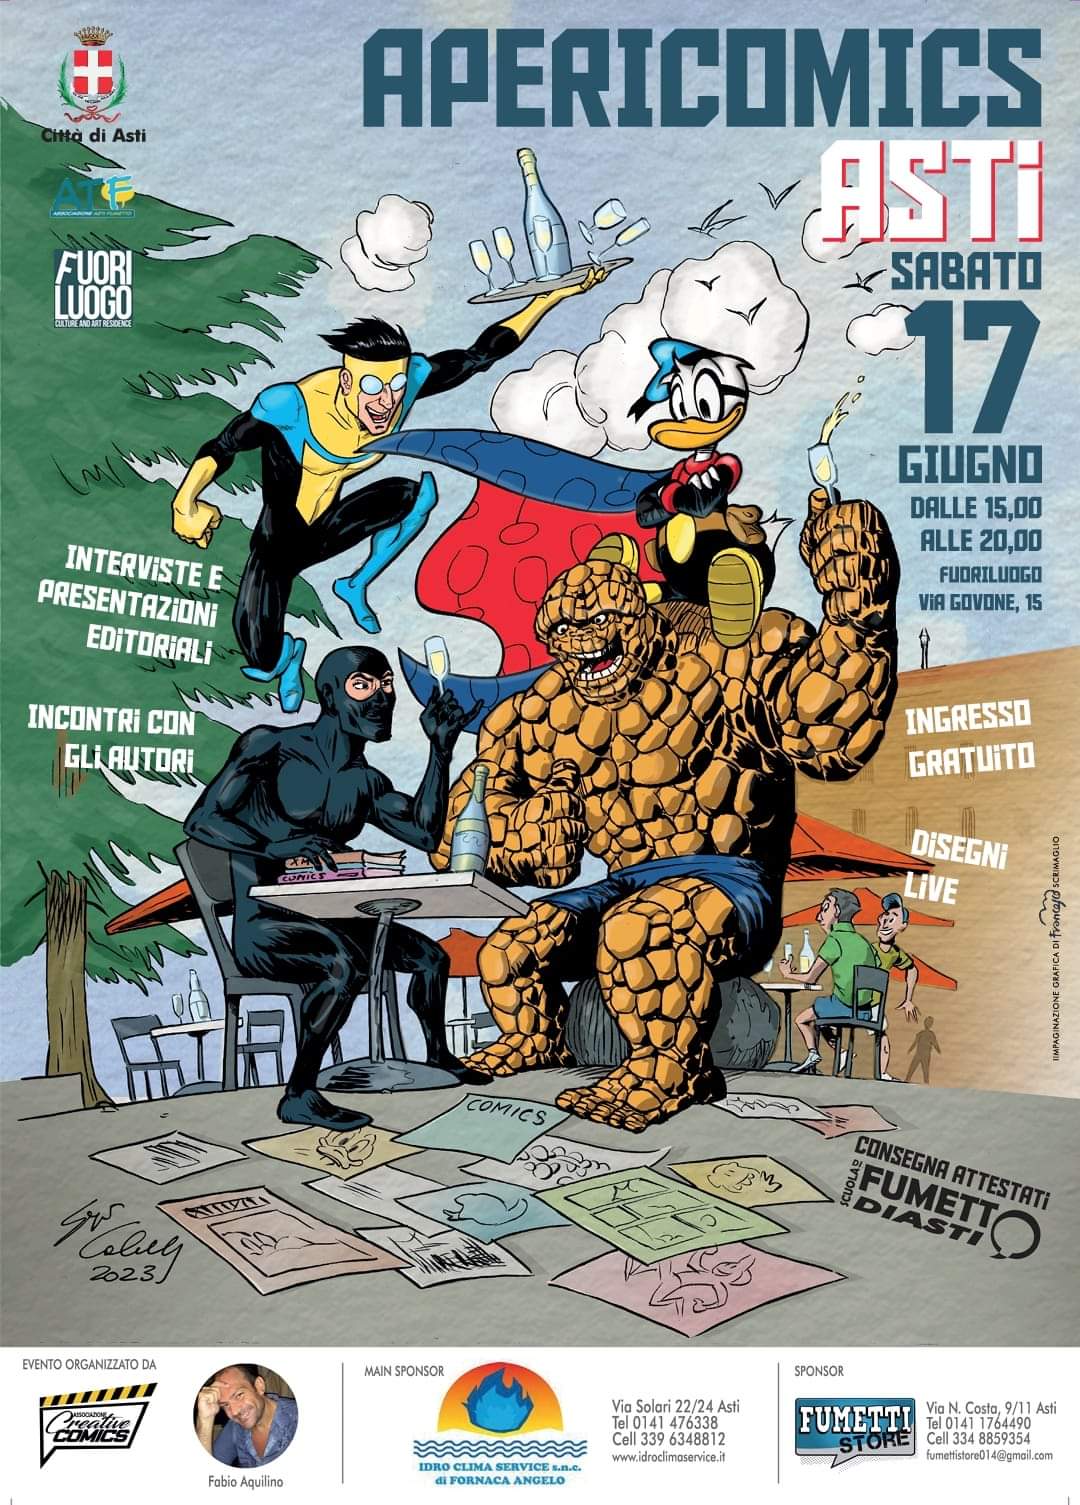 Apericomics di Asti (Seconda edizione) a Fuoriluogo, 17 Giugno 2023